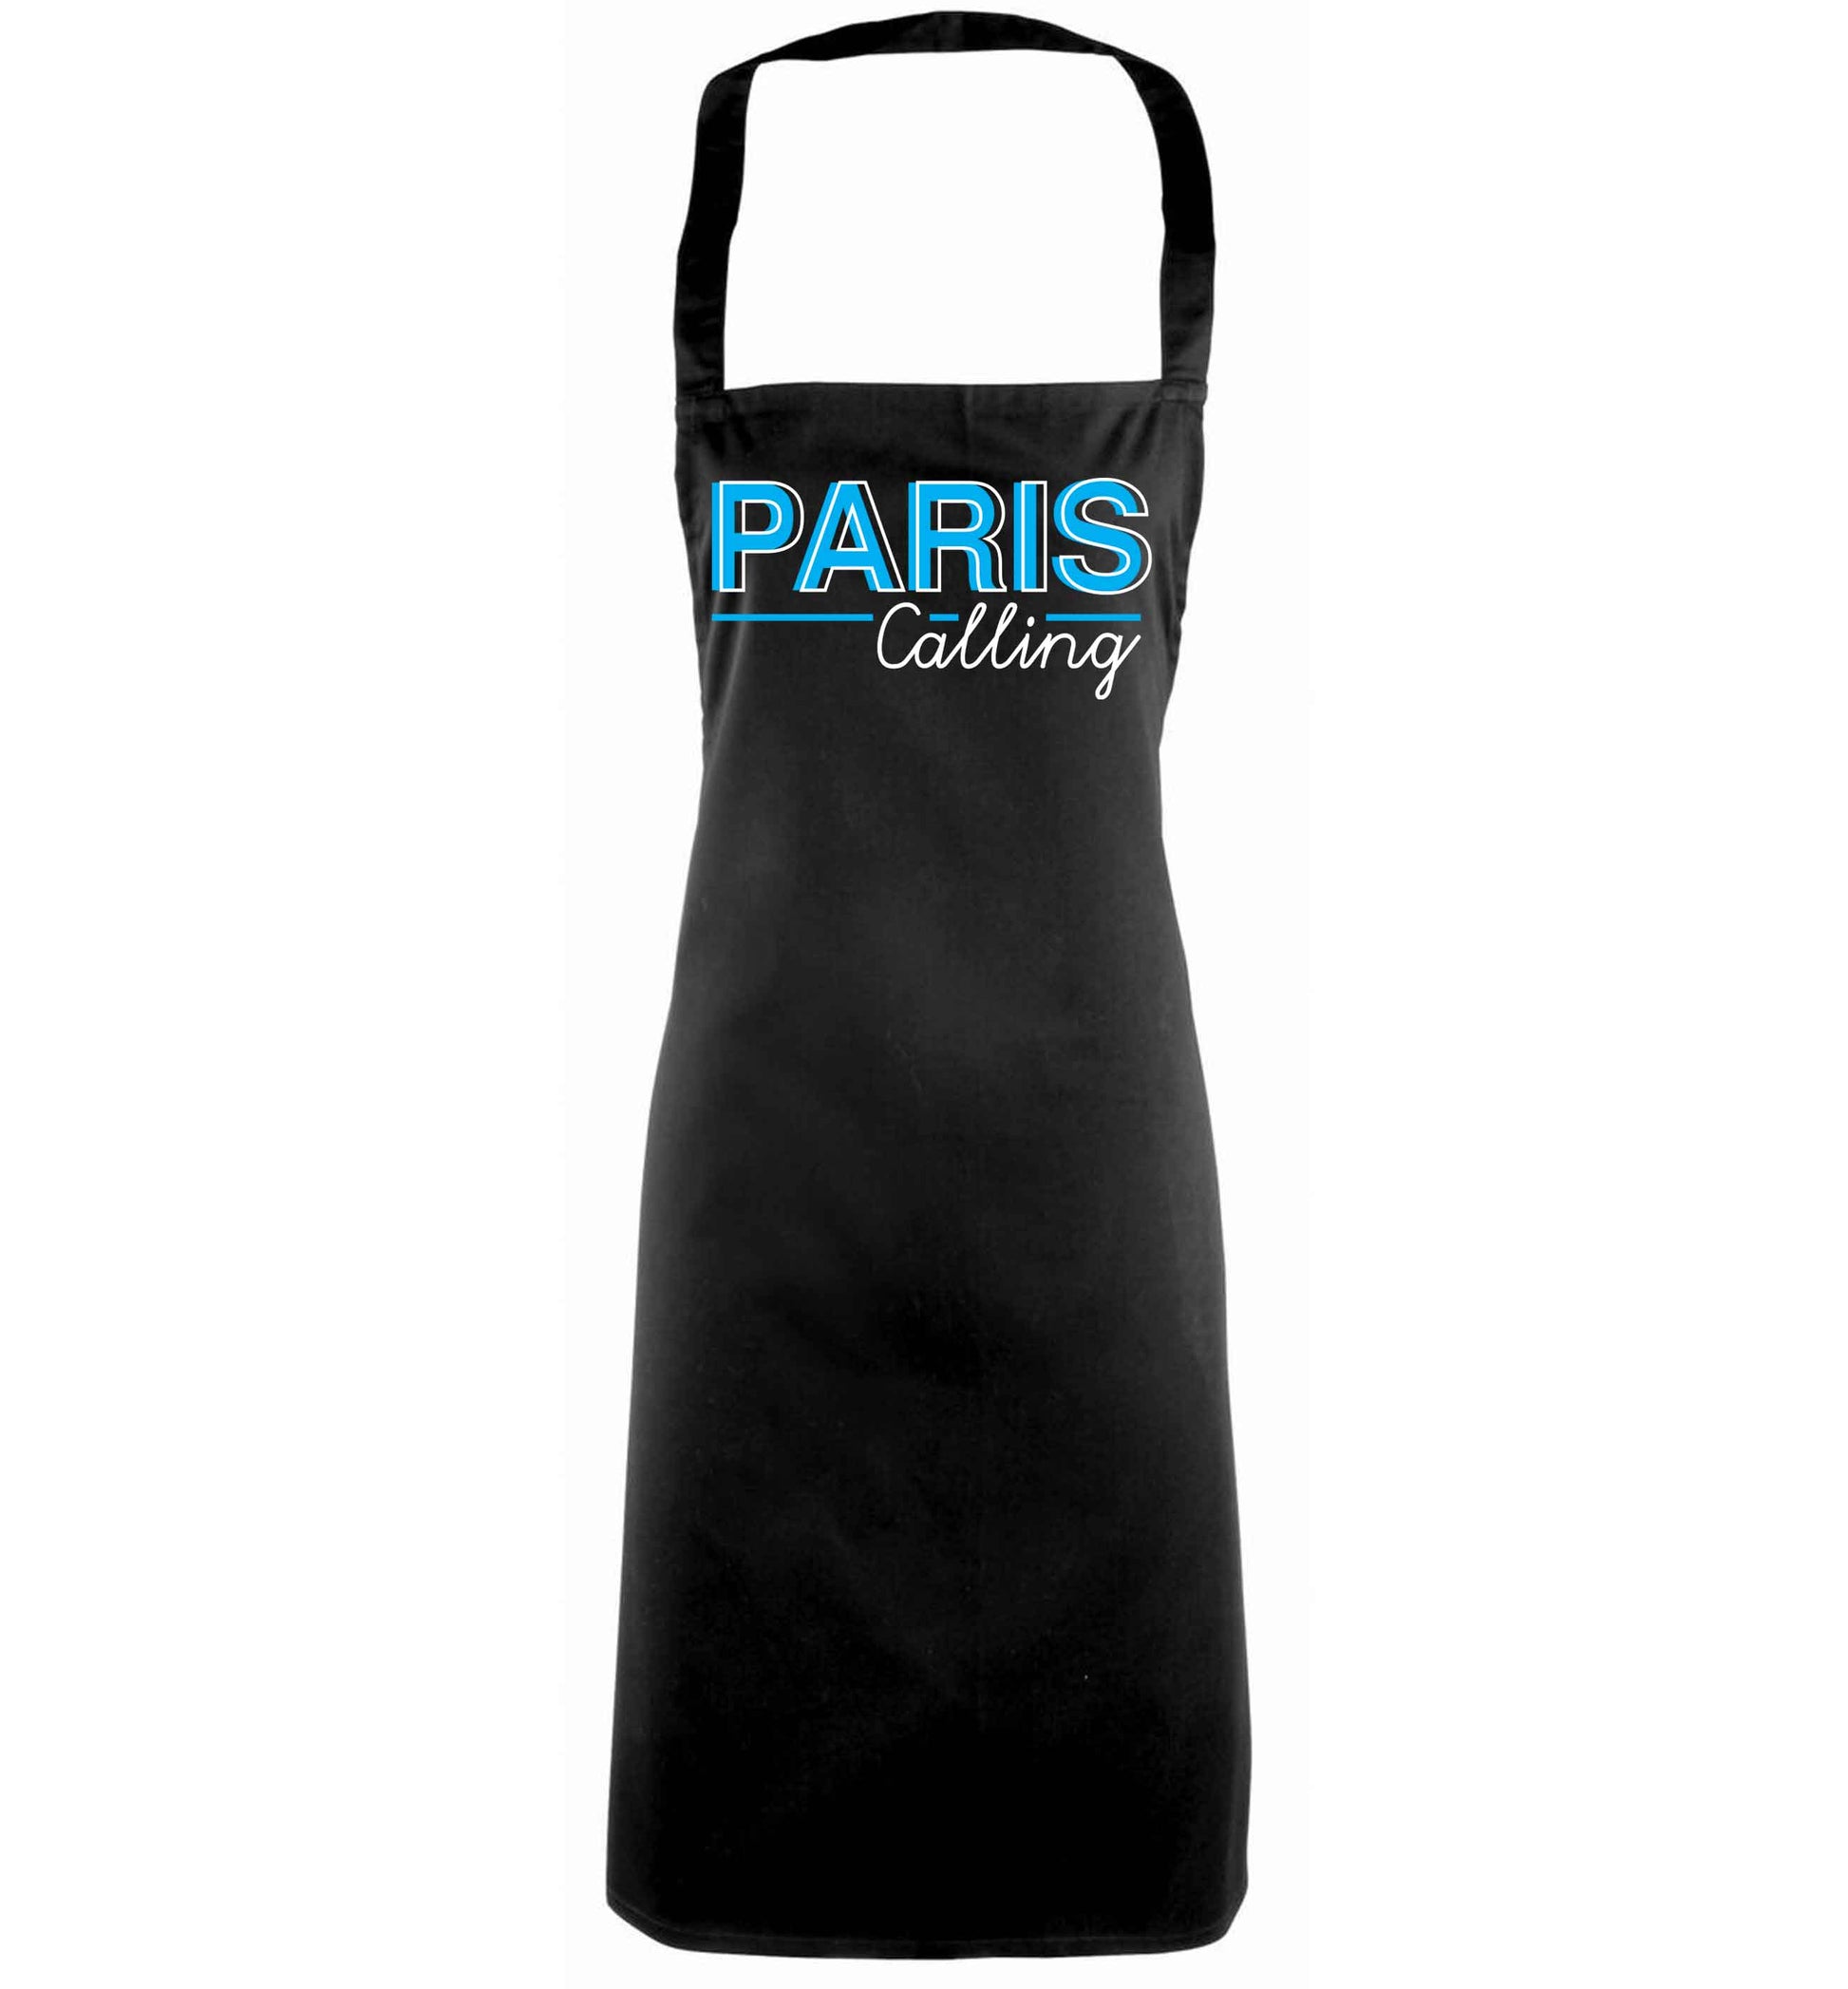 Paris calling black apron